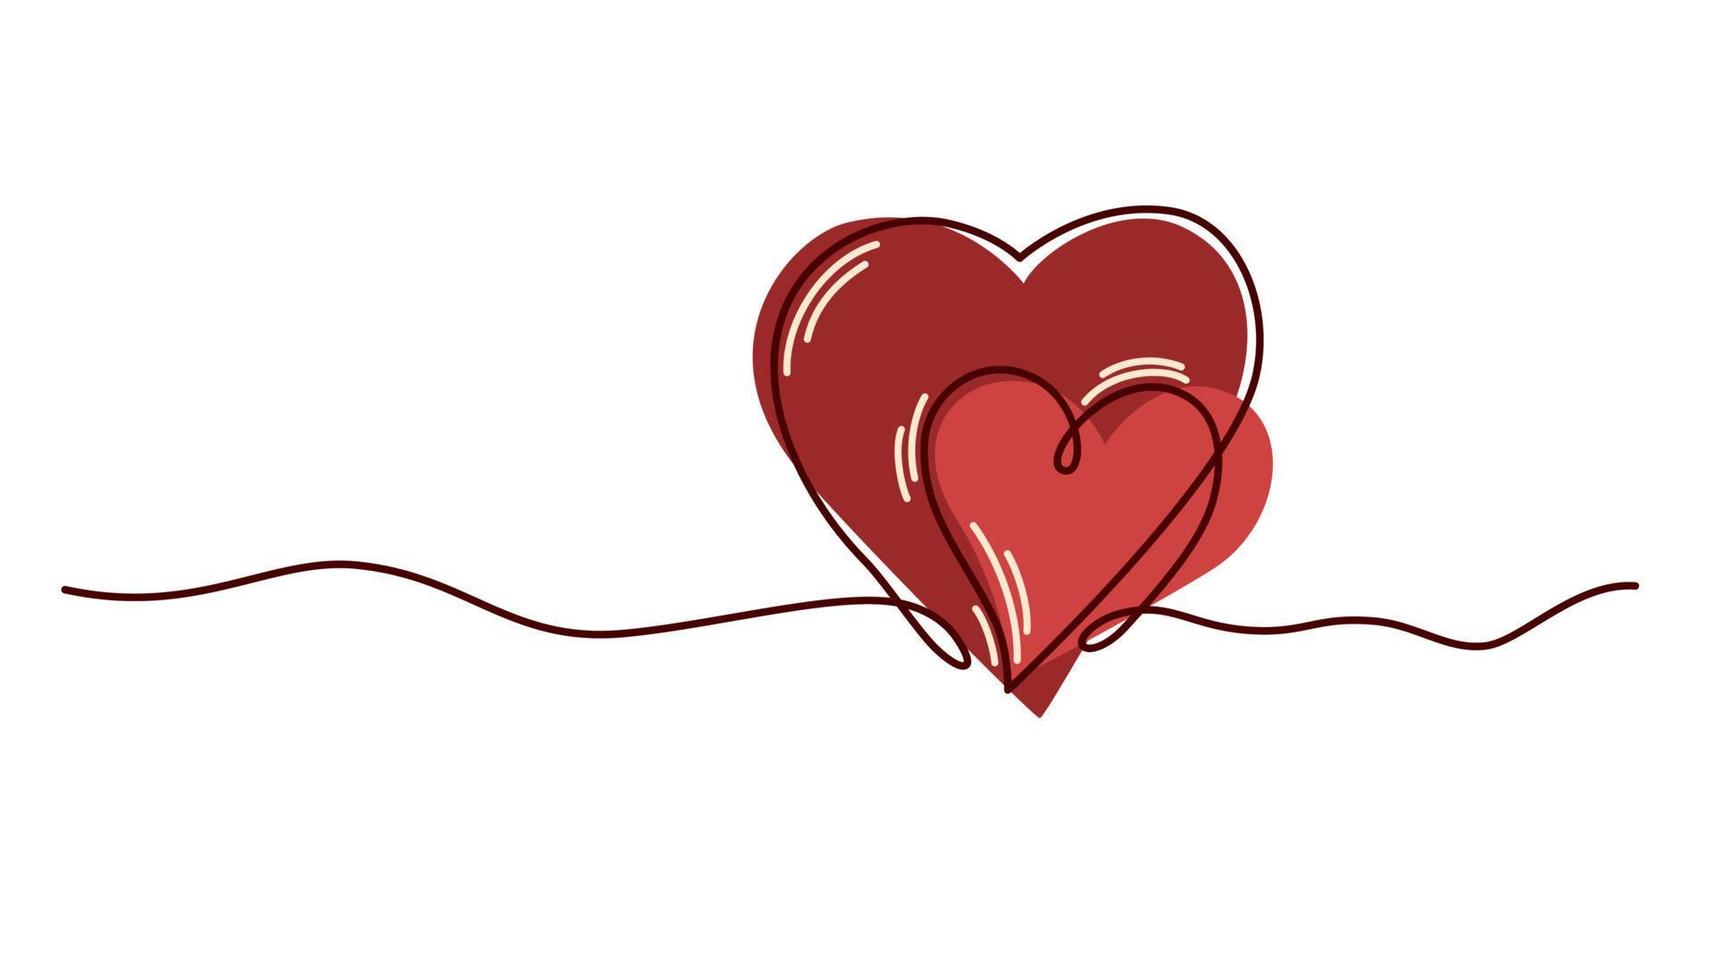 cœur. concept d'amitié et d'amour. dessin d'art en ligne continue. parfait pour imprimer des cartes postales et la Saint-Valentin. illustration vectorielle de dessin à la main. vecteur